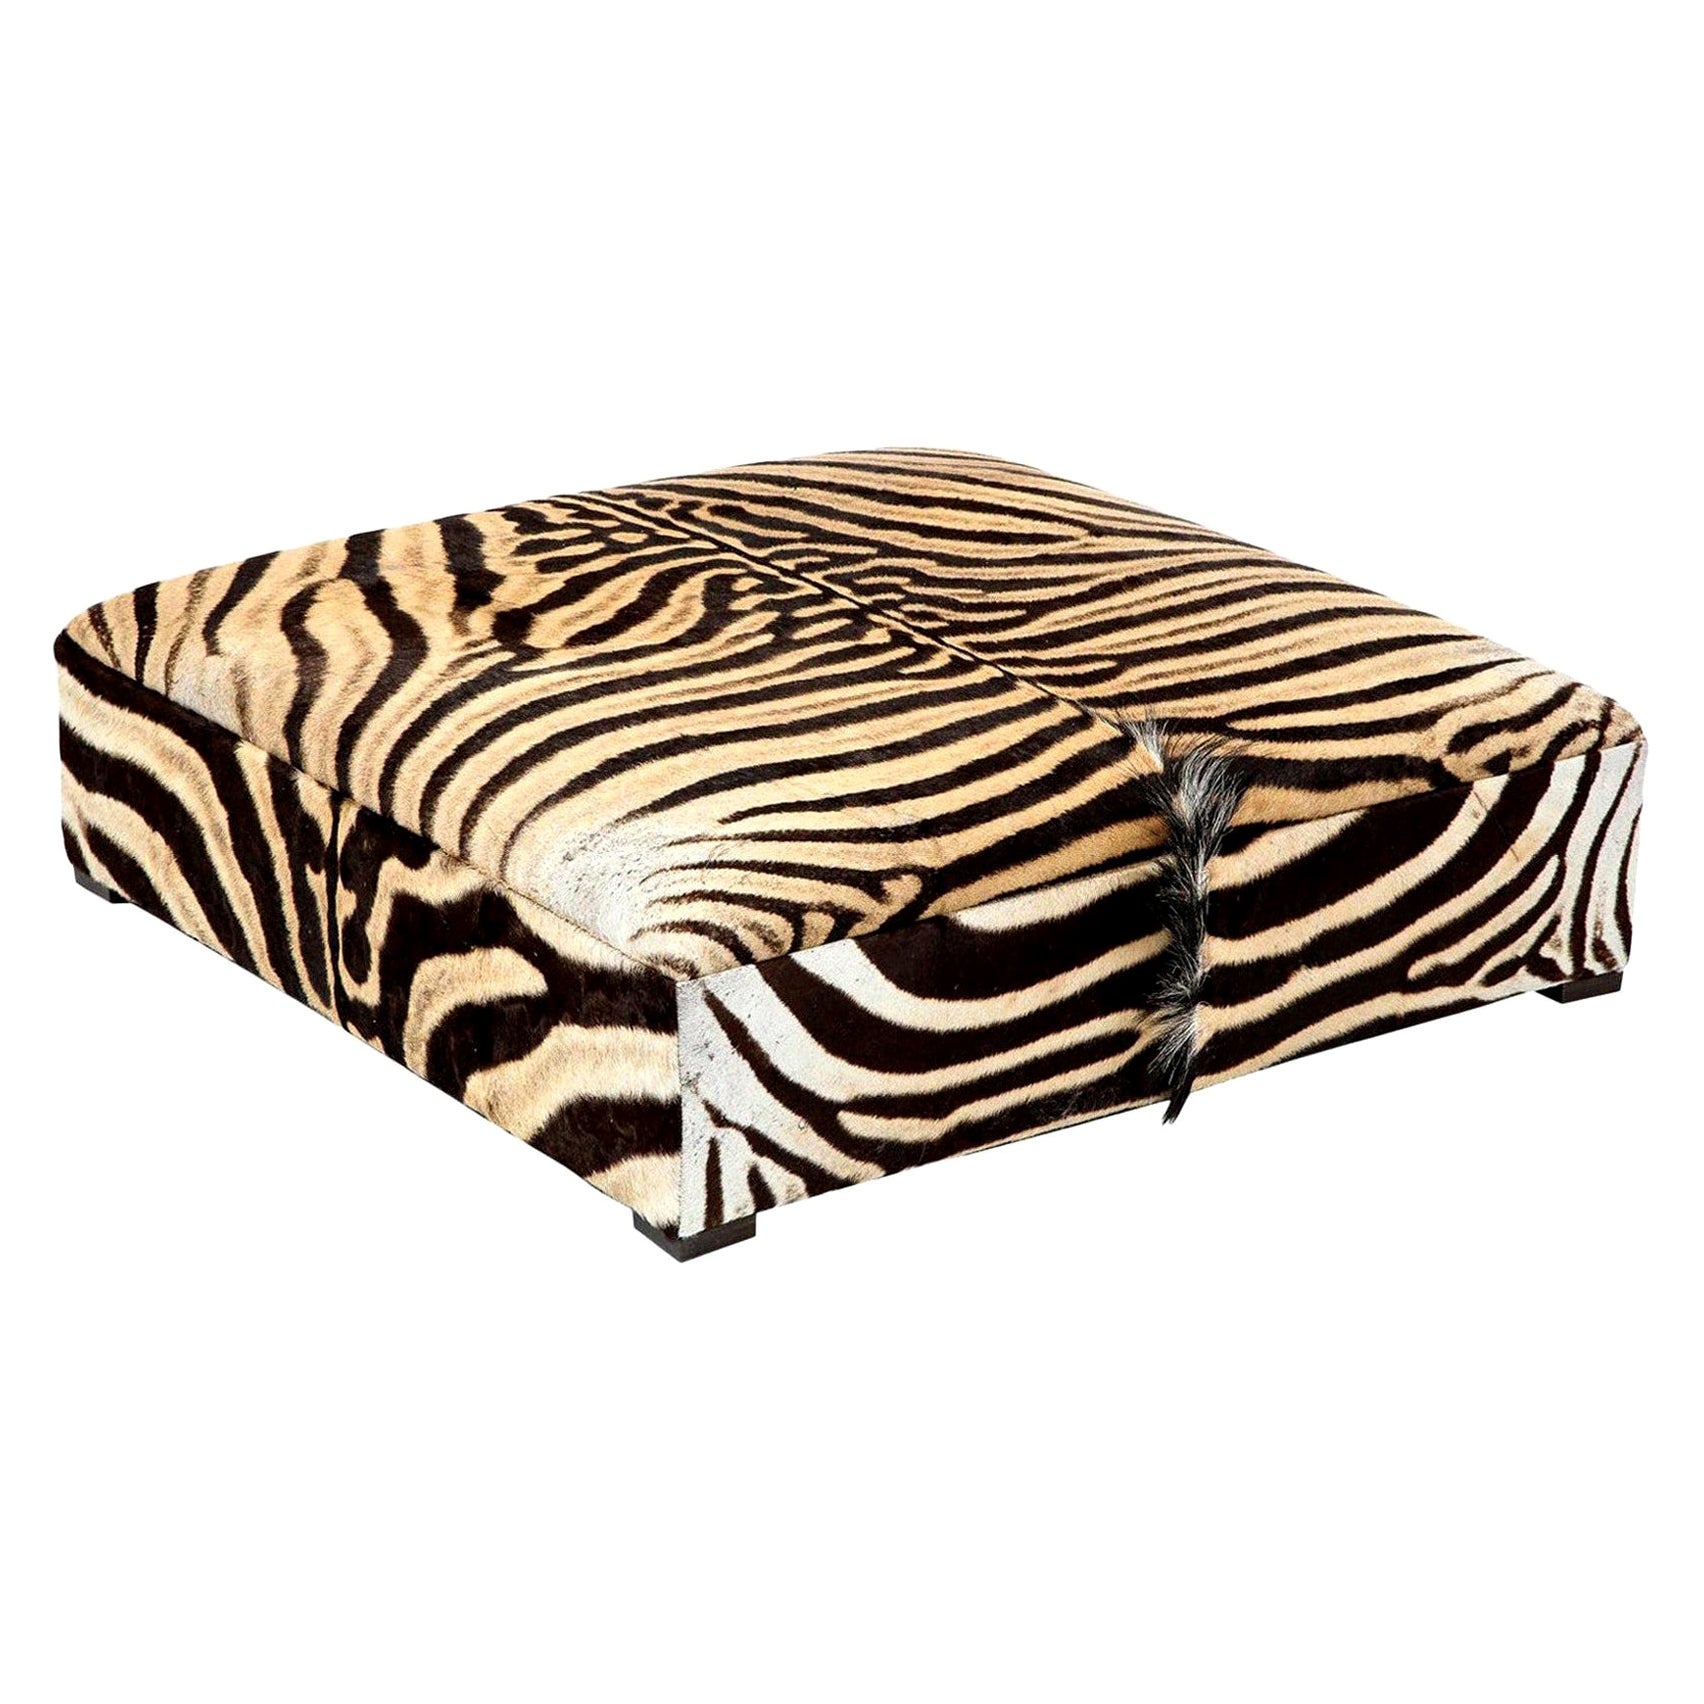 Ottomane/table basse carrée Zebra, deux peaux Zebra, fabriquée sur mesure aux États-Unis en vente